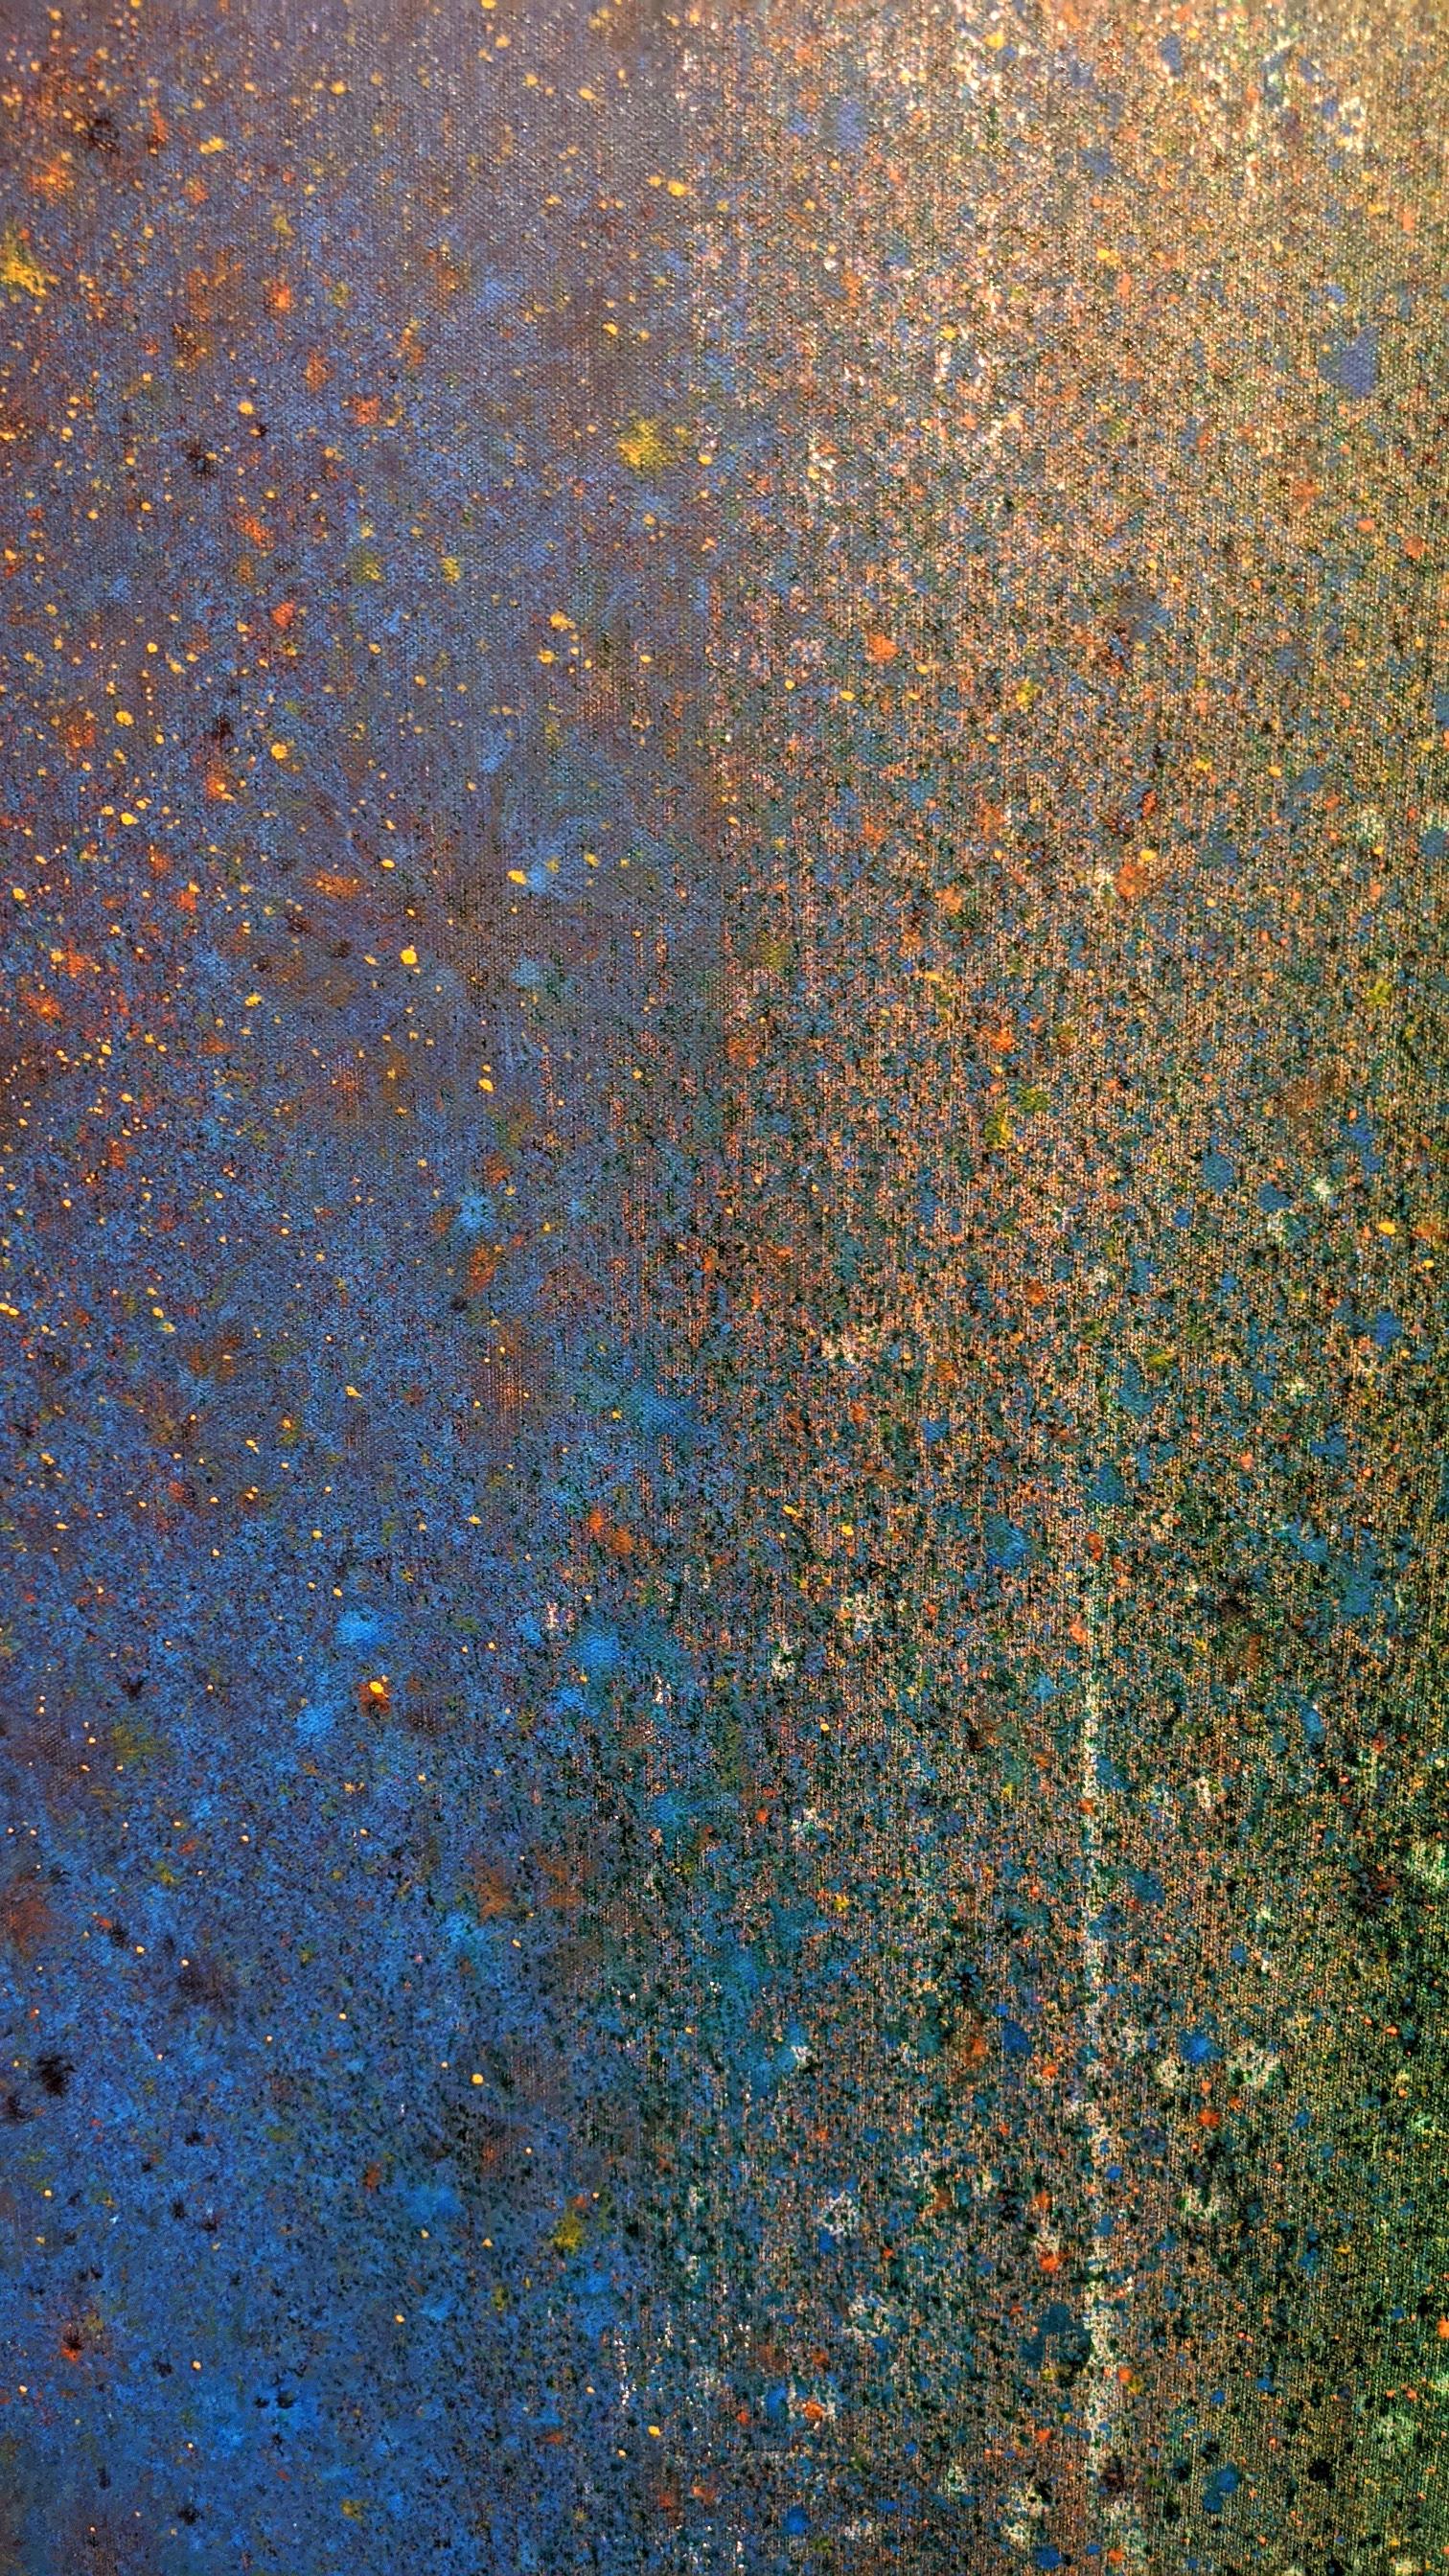 Abstrait #410, acrylique sur toile, 60 x 60 pouces.

Extraits de DENIS PHILLIPS écrit par Jane Connell

